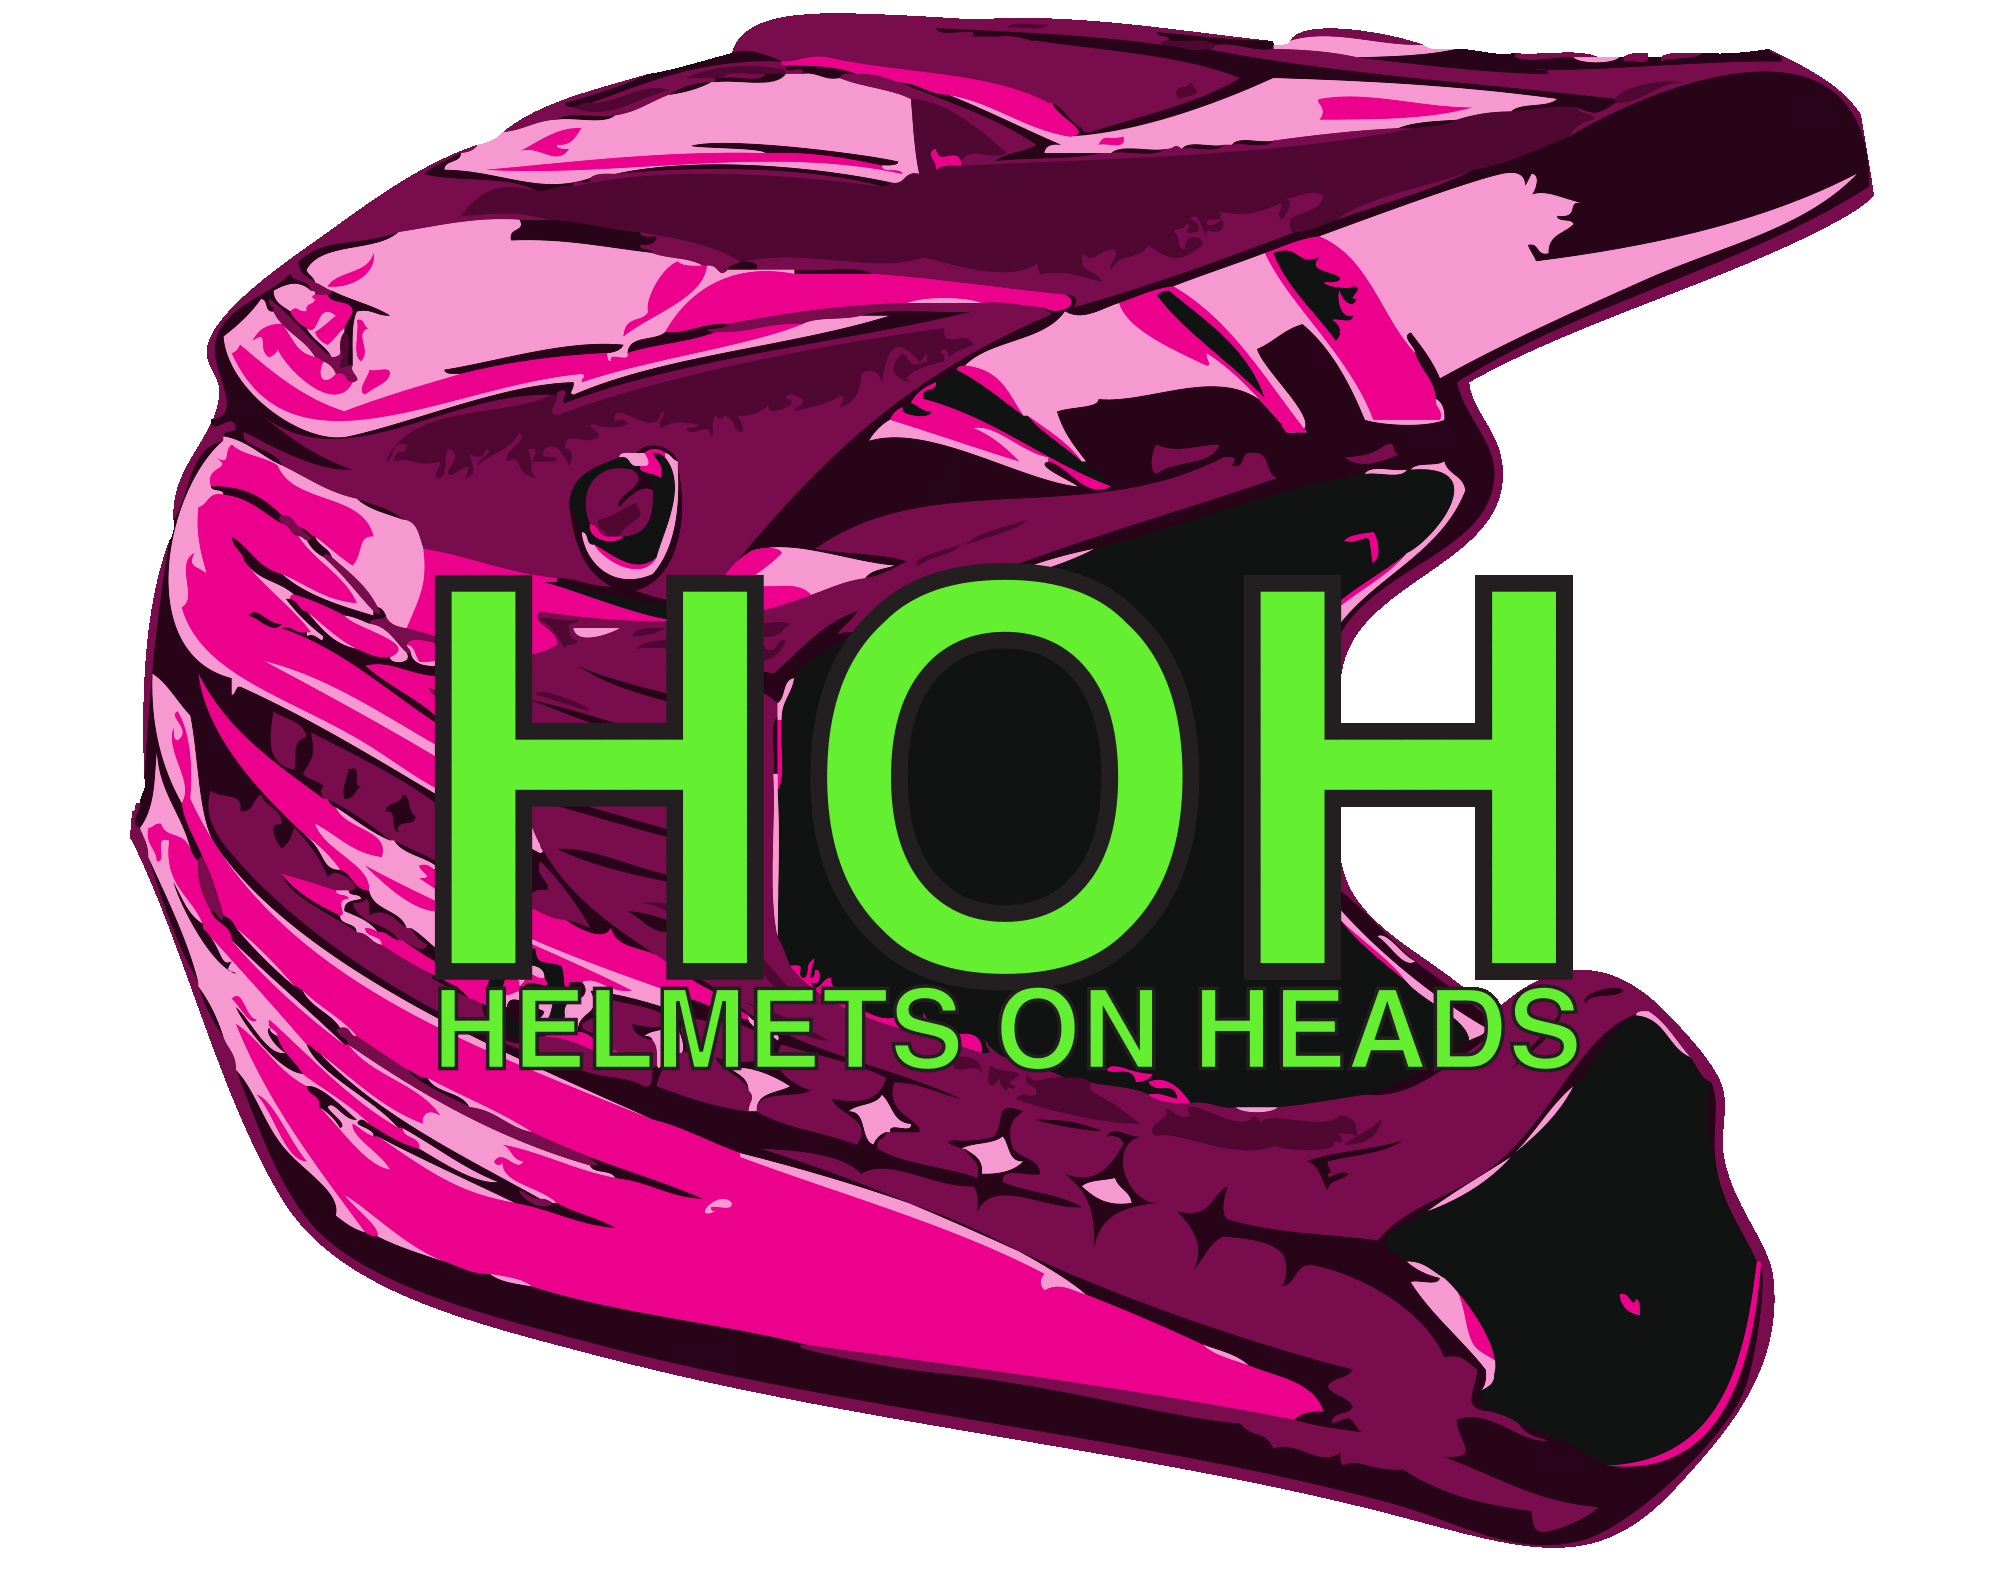 Helmets On Heads 